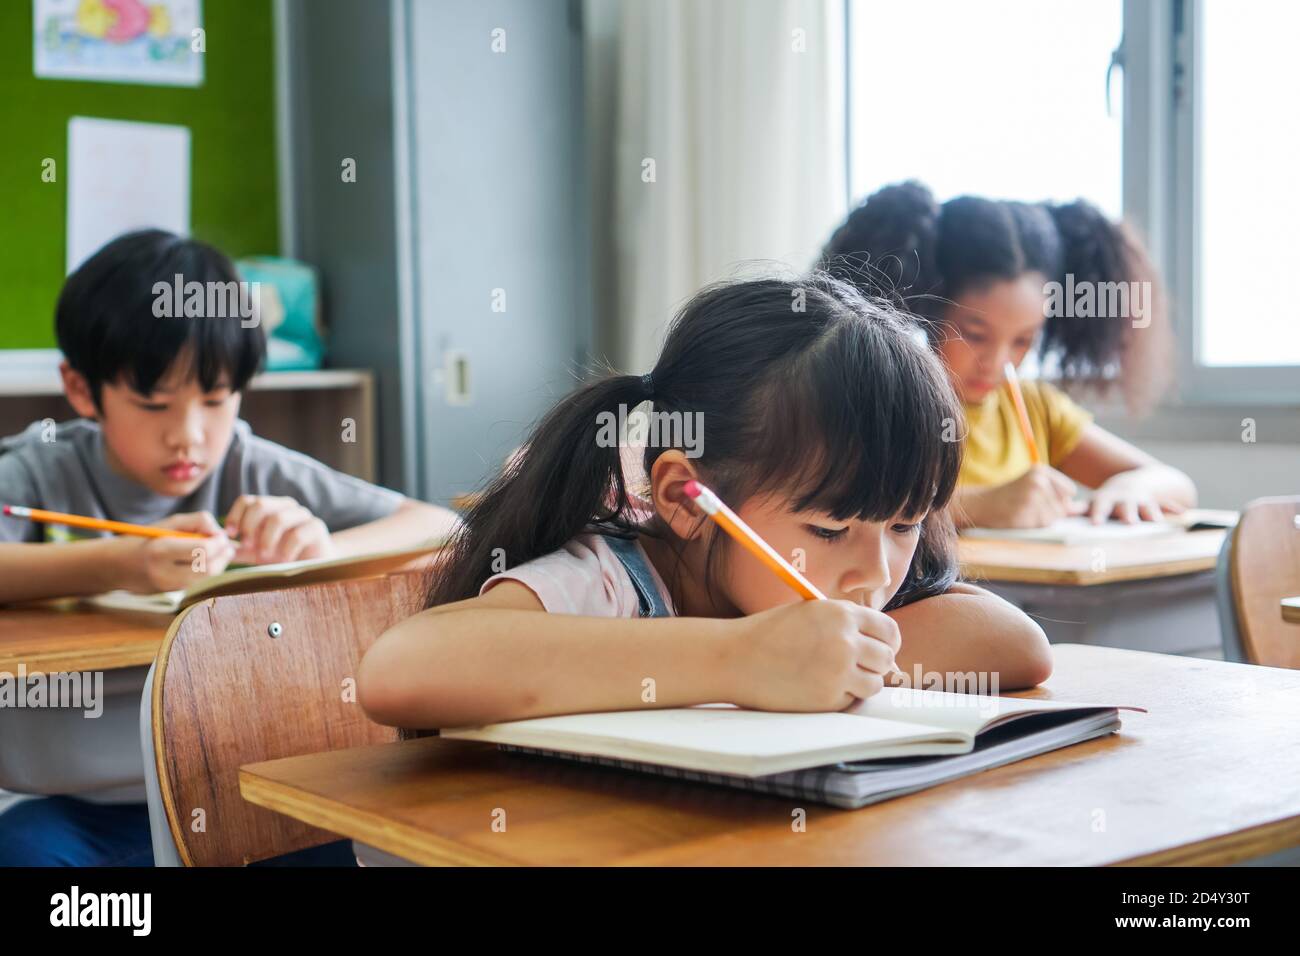 Fille d'école assis à l'école écrire dans le livre avec crayon, étudier, éducation, apprendre. Enfants asiatiques dans la classe. Diversité des élèves. Banque D'Images